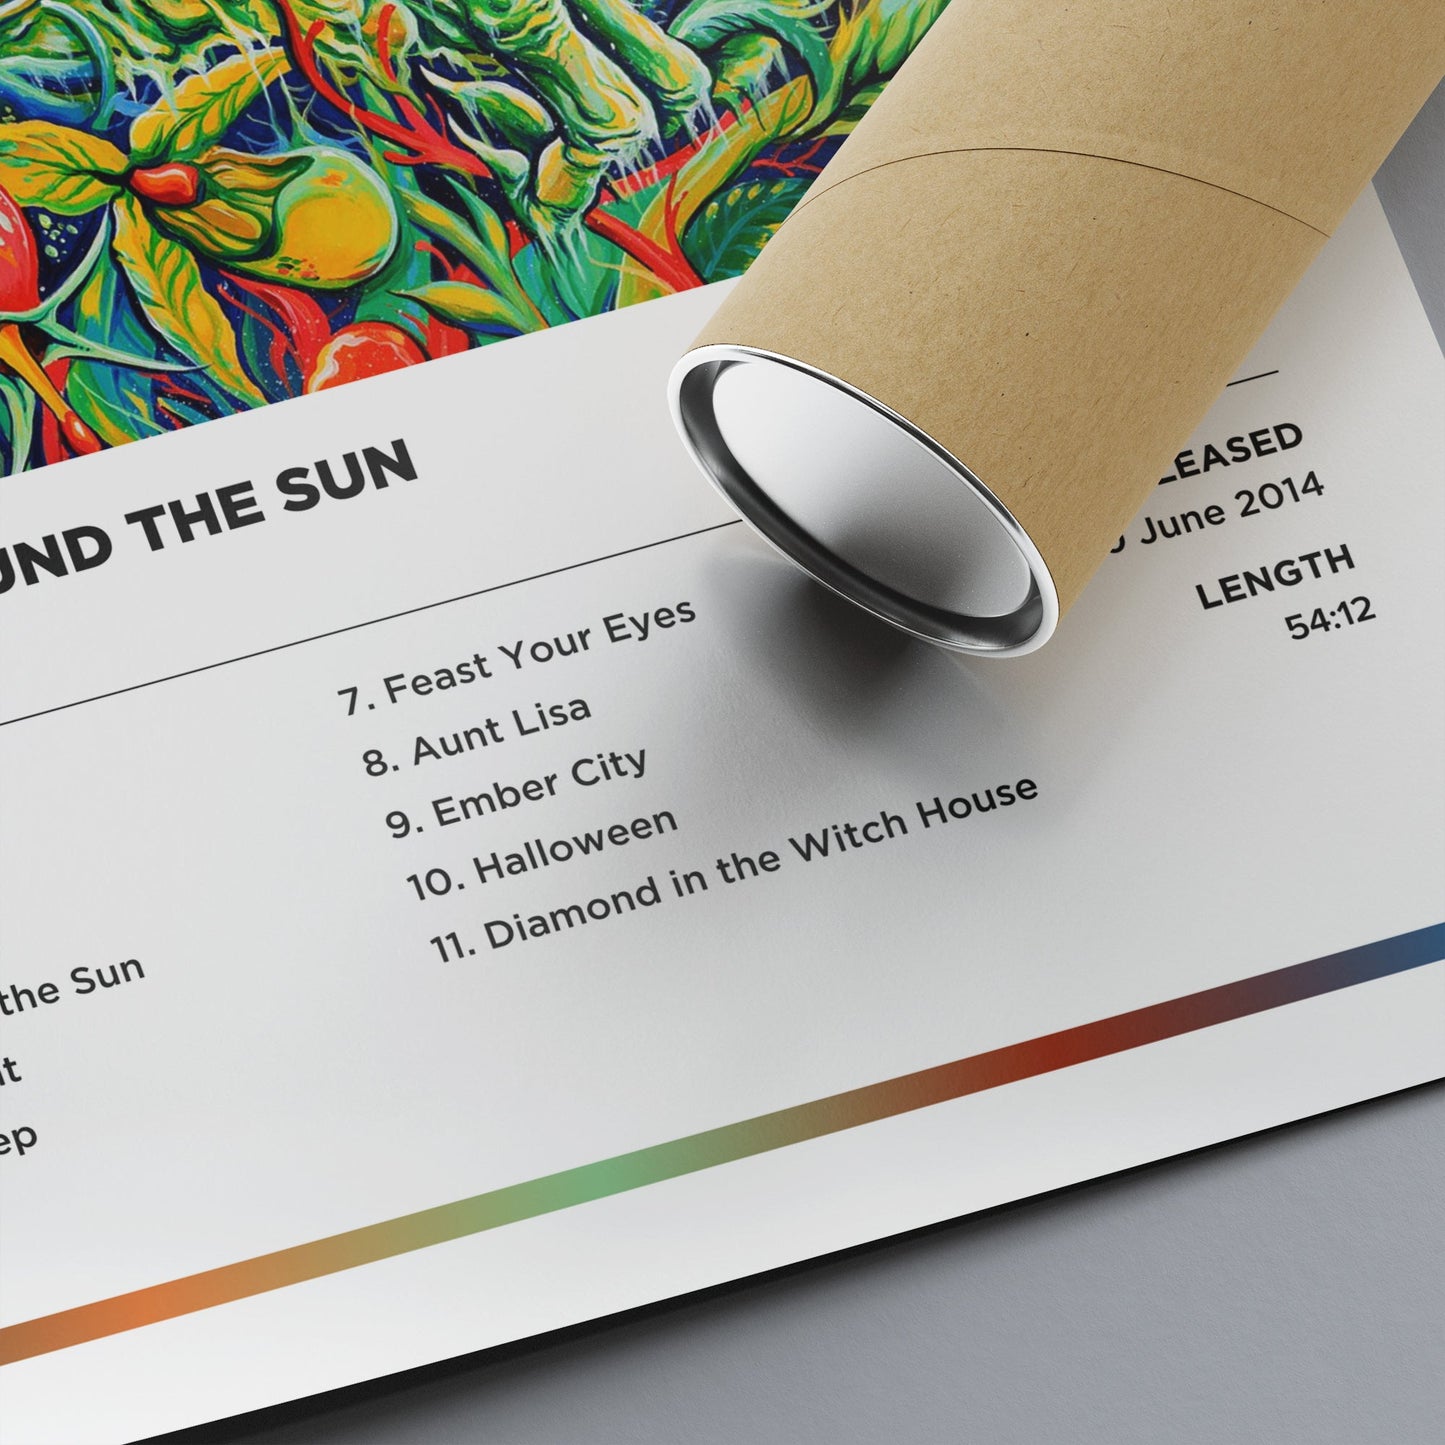 Mastodon - Once More 'Round the Sun Framed Poster Print | Polaroid Style | Album Cover Artwork